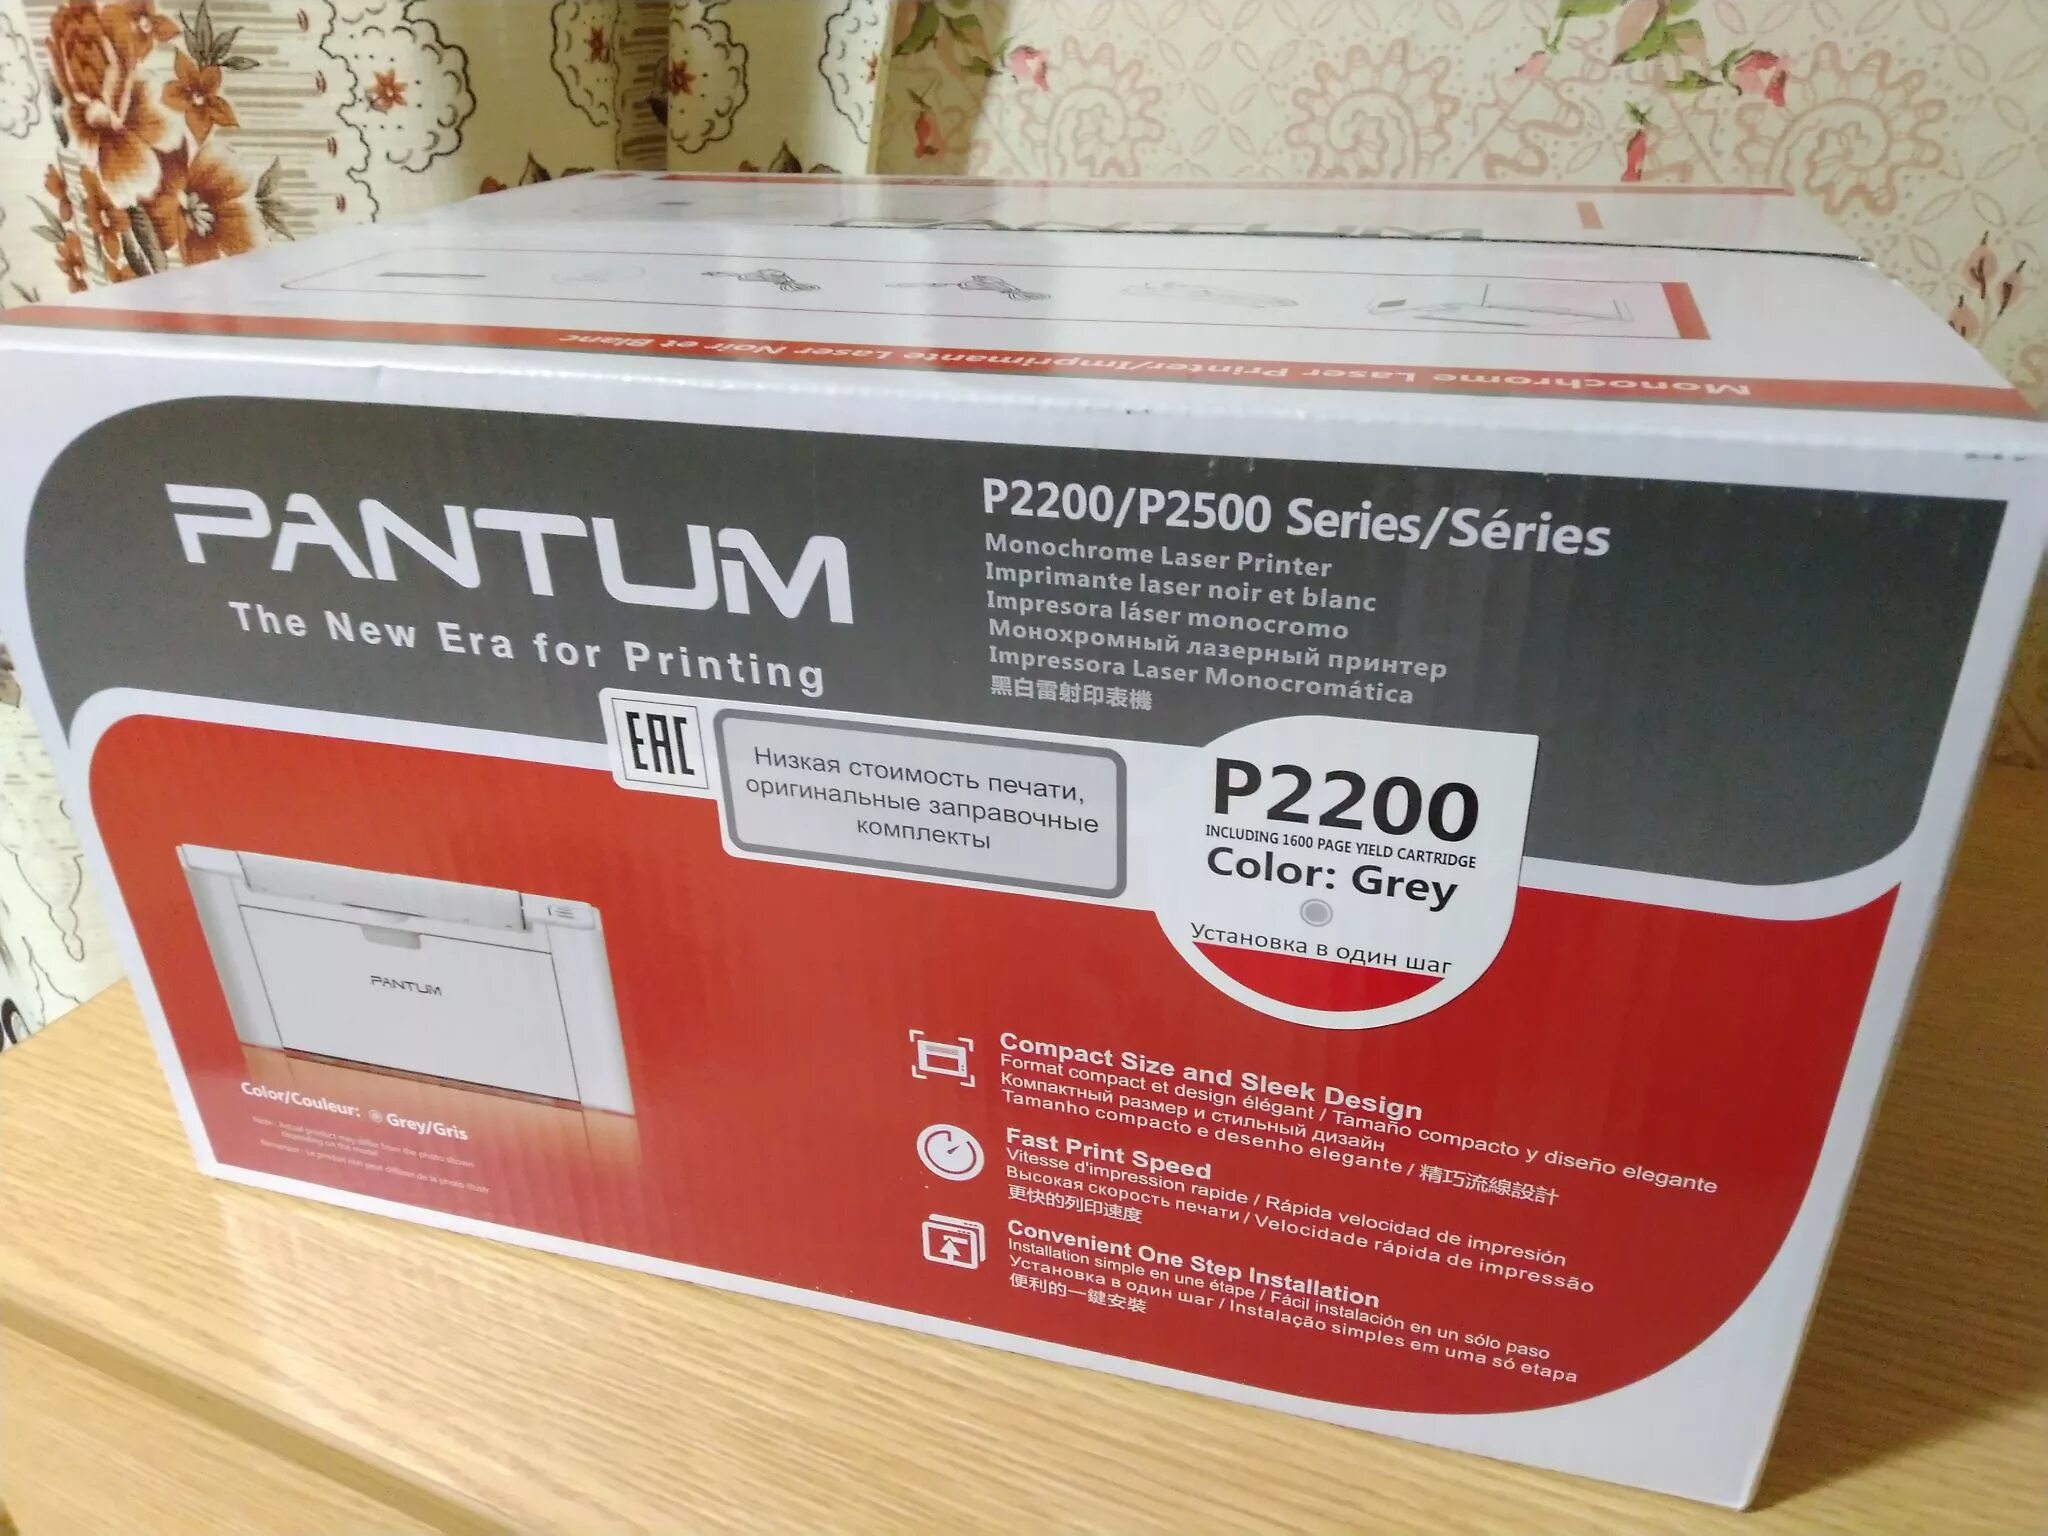 P2200 series драйвер. Принтер Pantum p2516. Принтер лазерный Pantum p2200. Pantum принтер Pantum p2200. Картридж для принтера Pantum p2200.